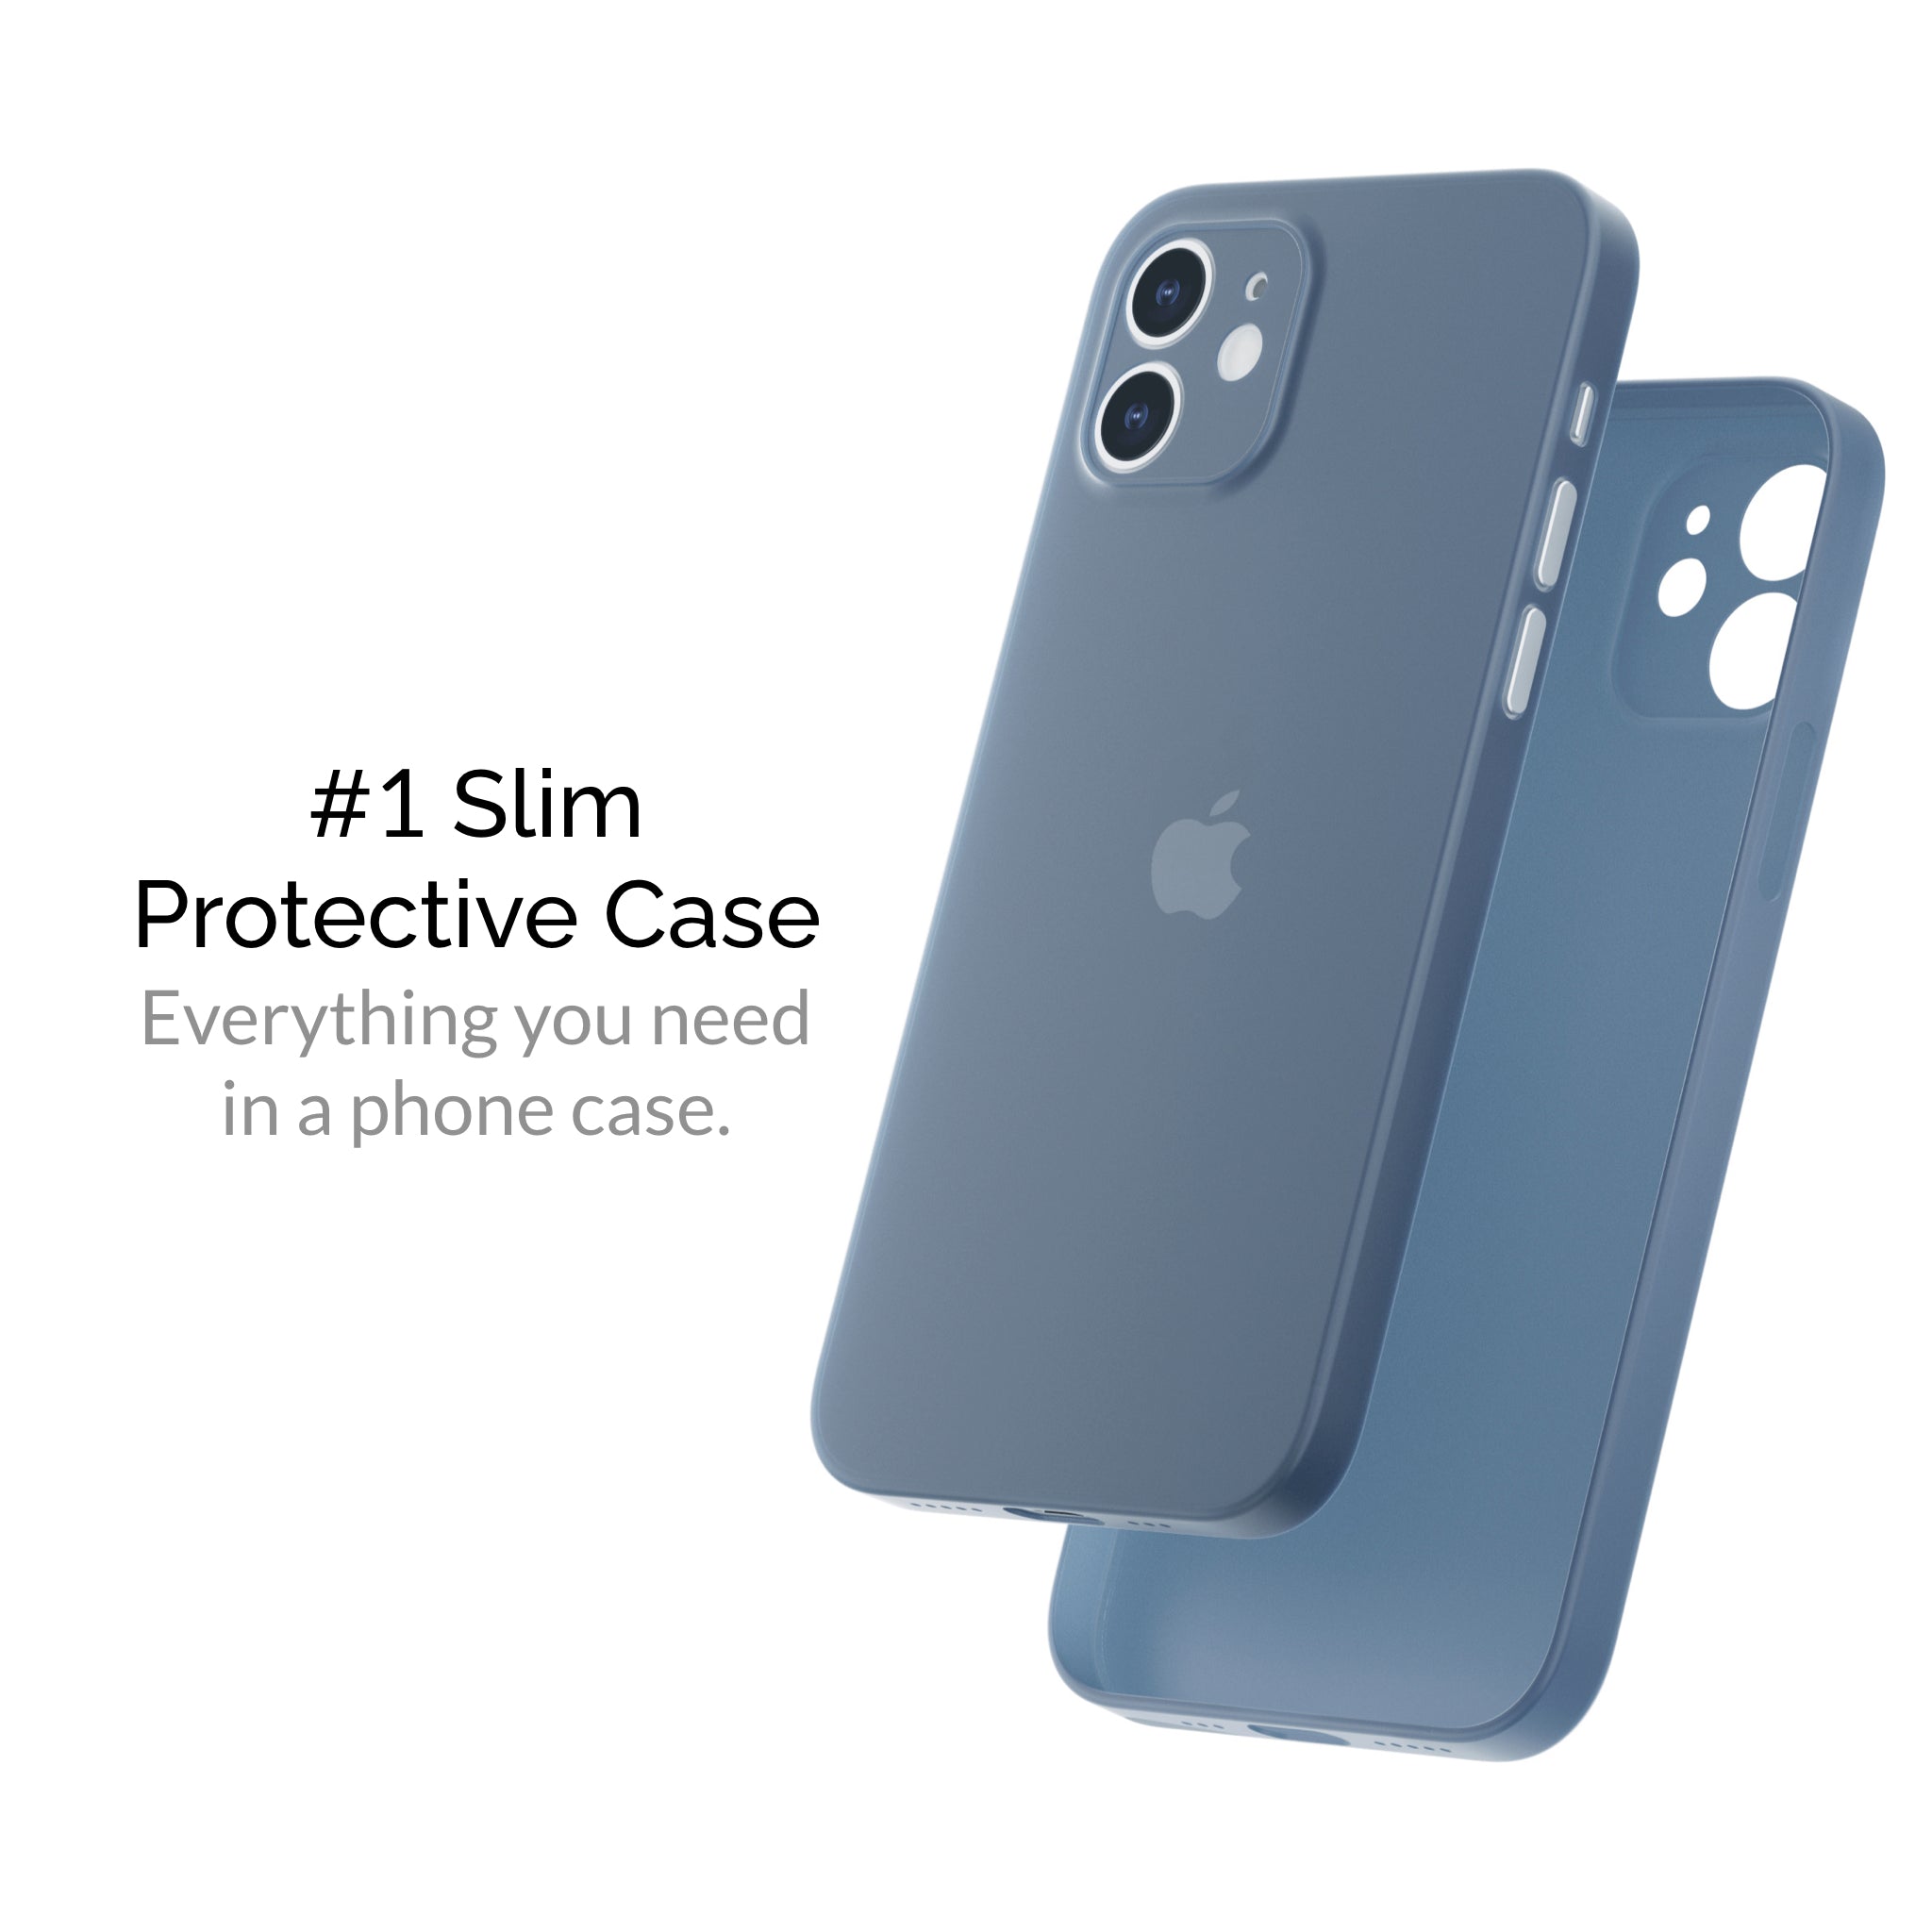 iphone 12 mini cases, iphone 12 mini case, slimcase iphone 12 mini, iphone 12 mini slimcase